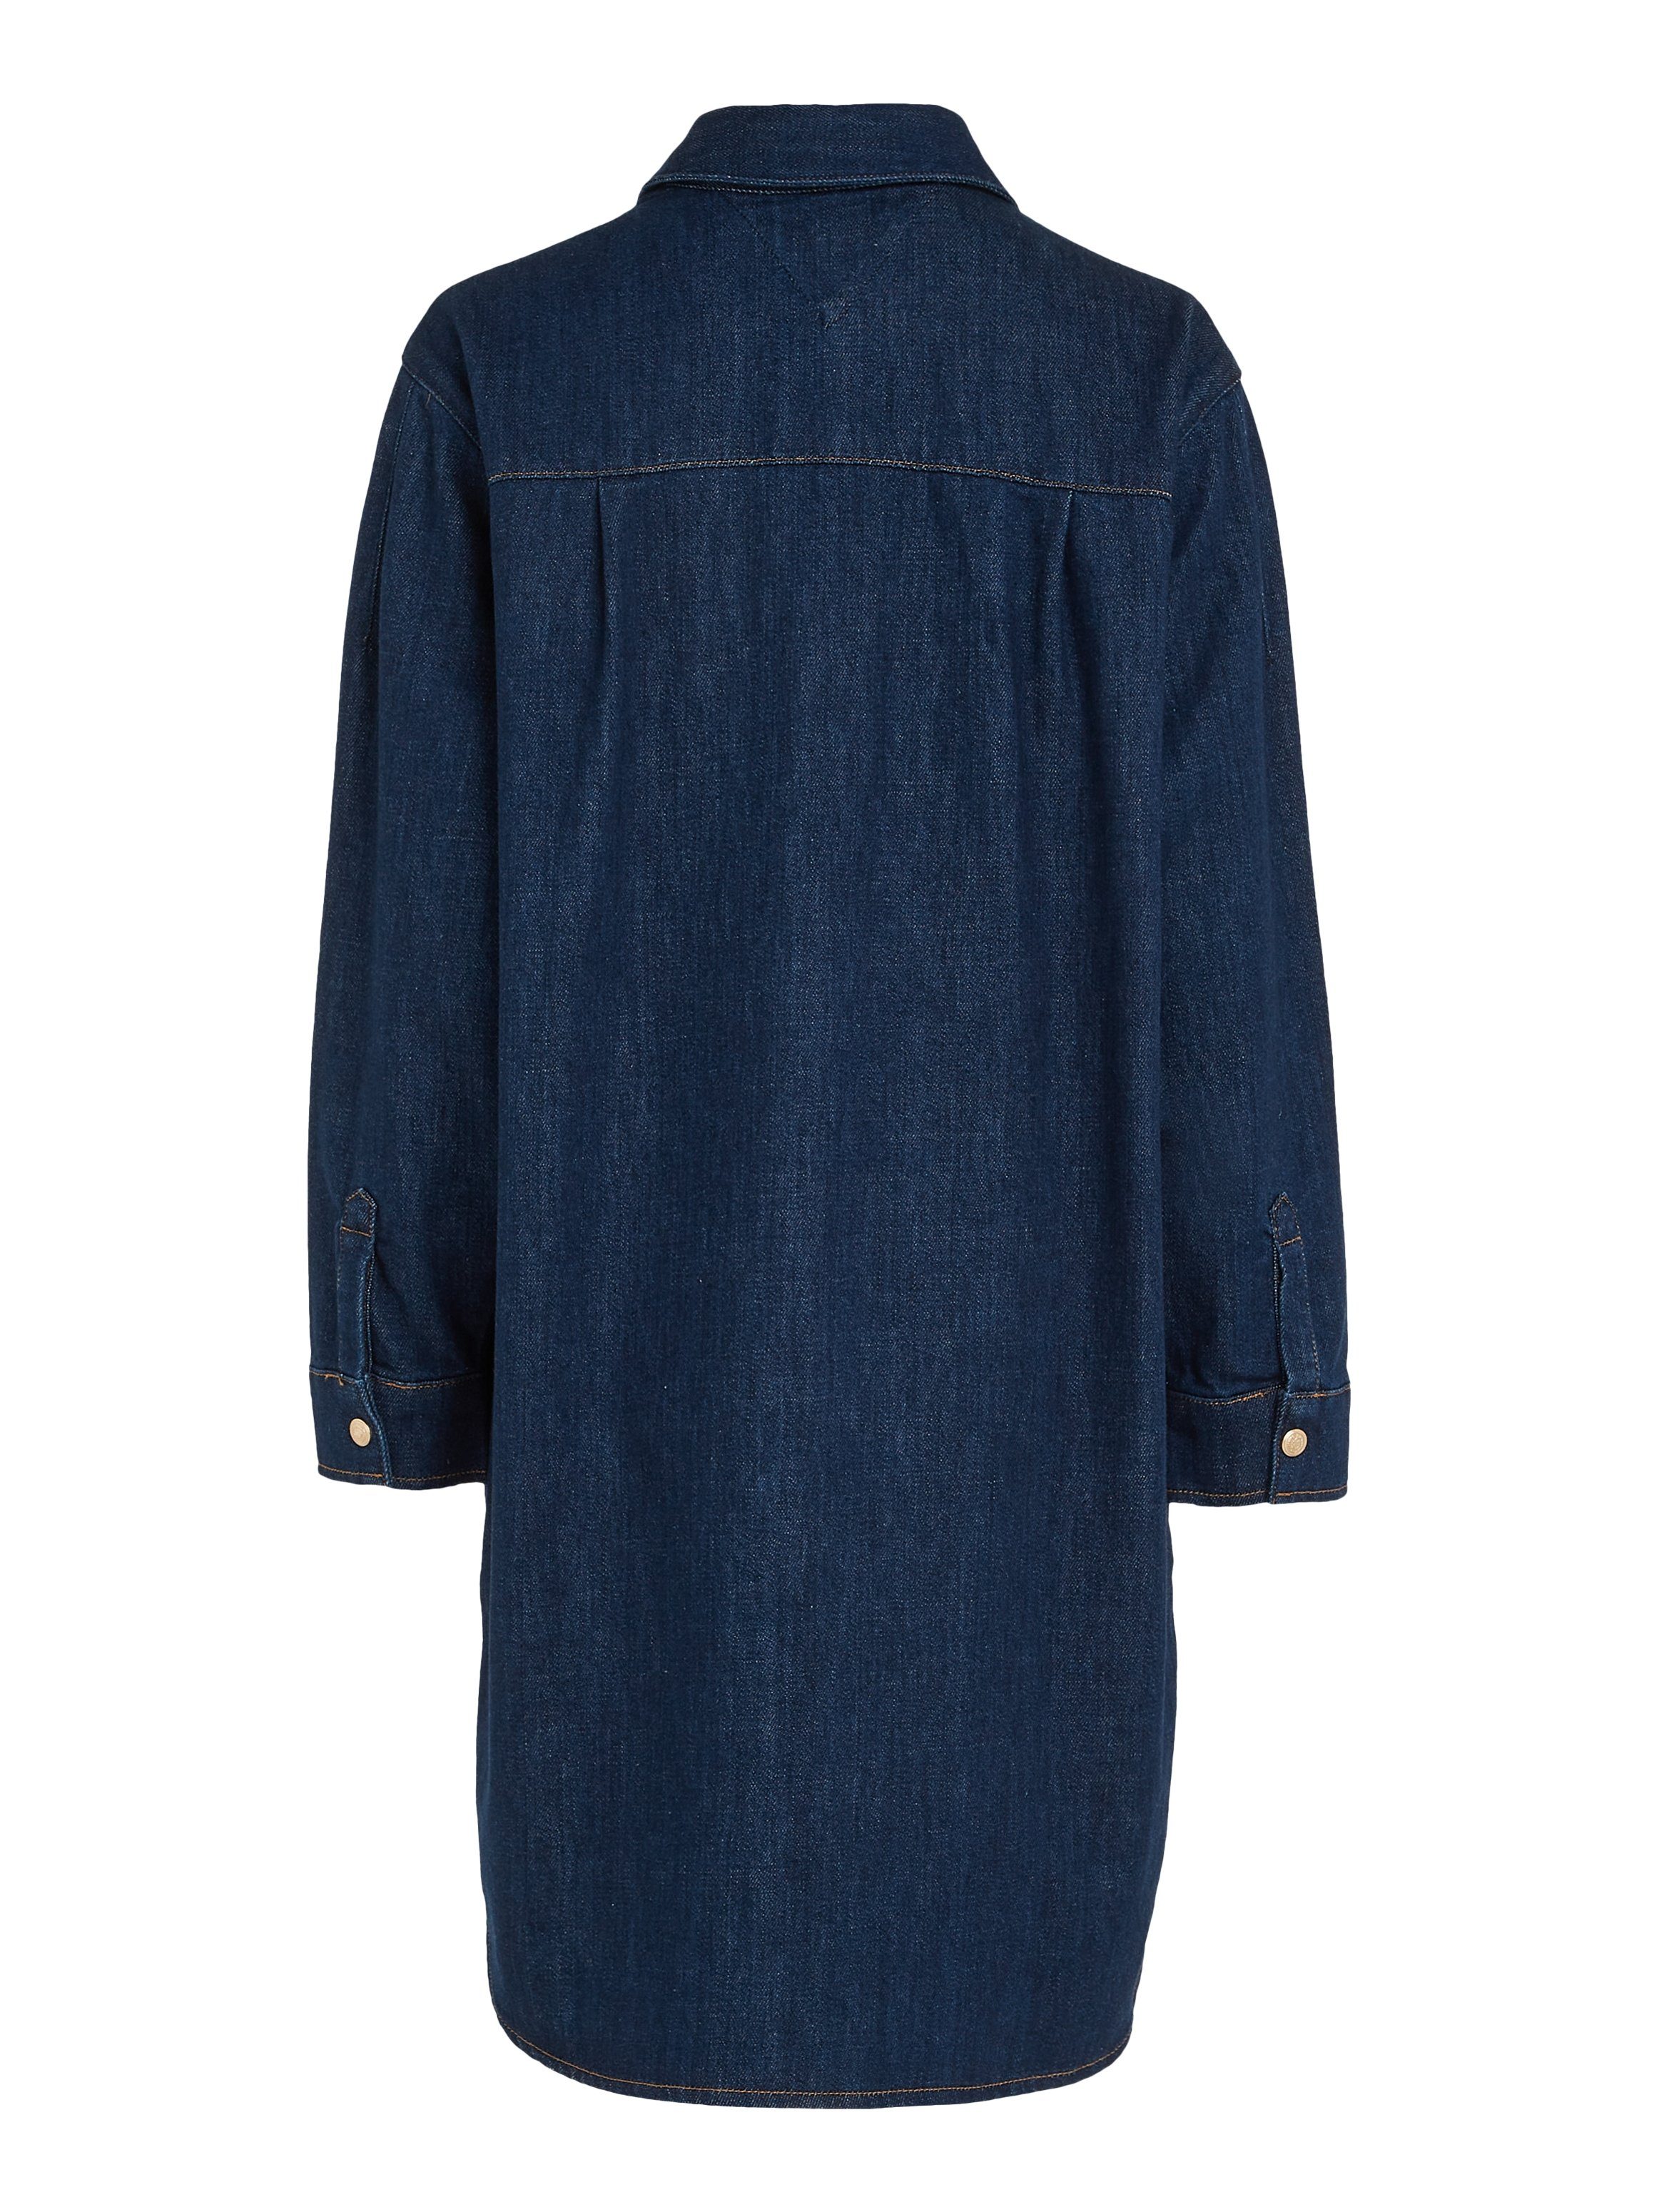 Jeanskleid DRESS Tommy NALA mit LS Druckerleiste Hilfiger durchgehender SHIRT DNM